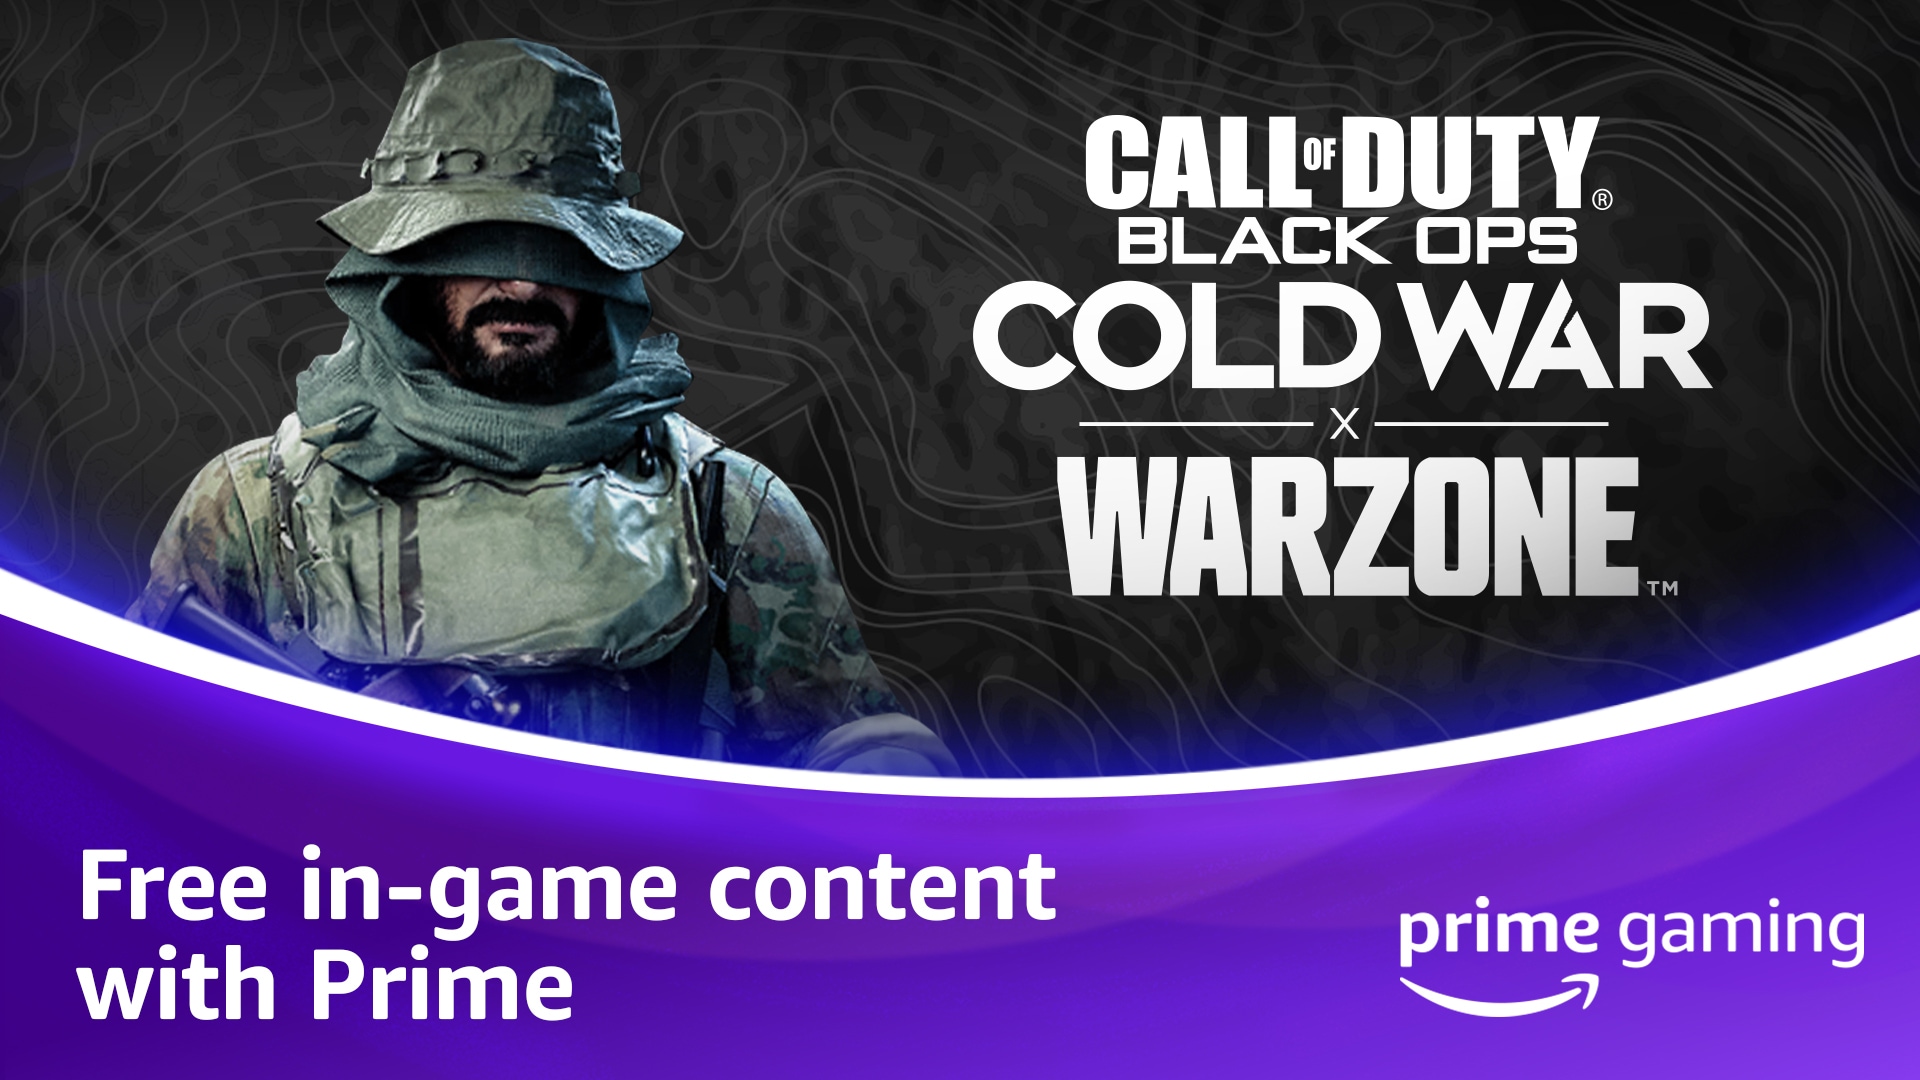 Présentation des récompenses Prime Gaming pour Call of Duty®: Black Ops Cold War, Warzone™ et Call of Duty: Mobile destinées aux membres Prime